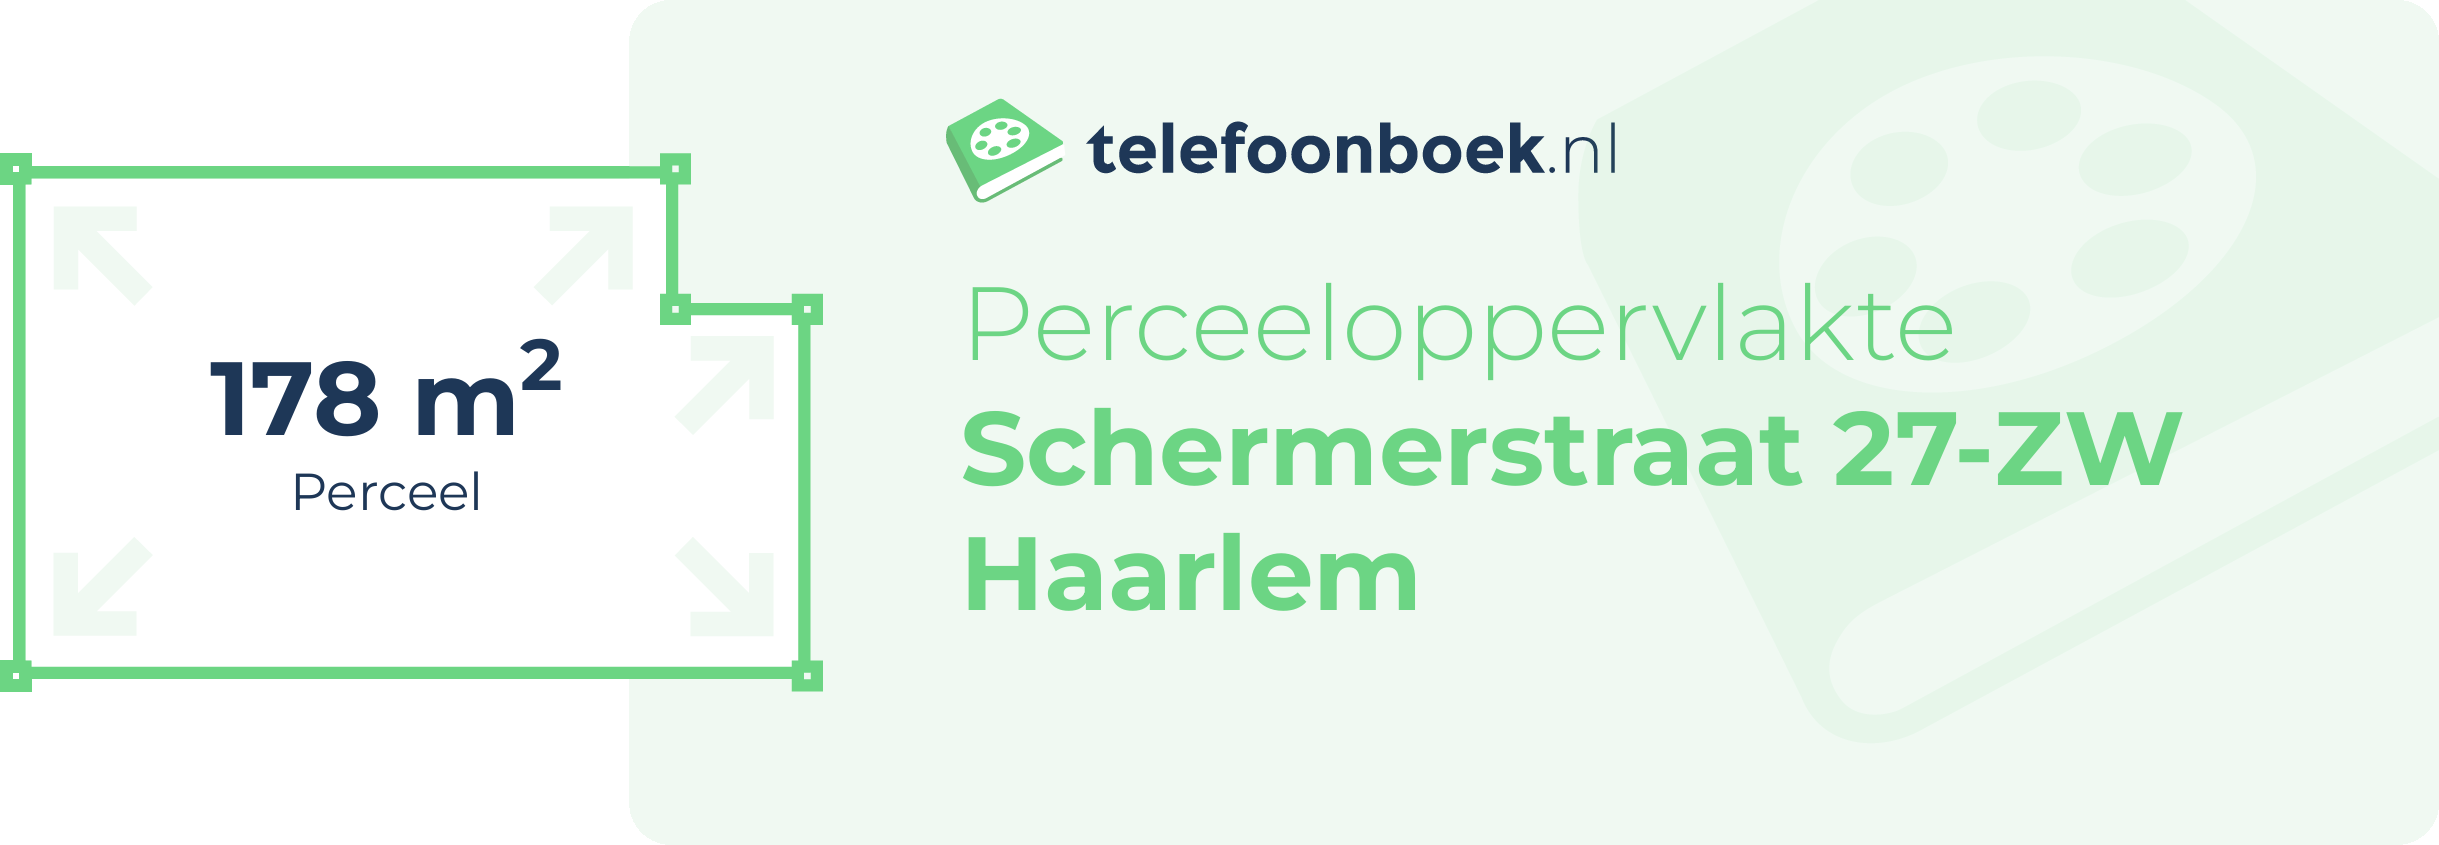 Perceeloppervlakte Schermerstraat 27-ZW Haarlem